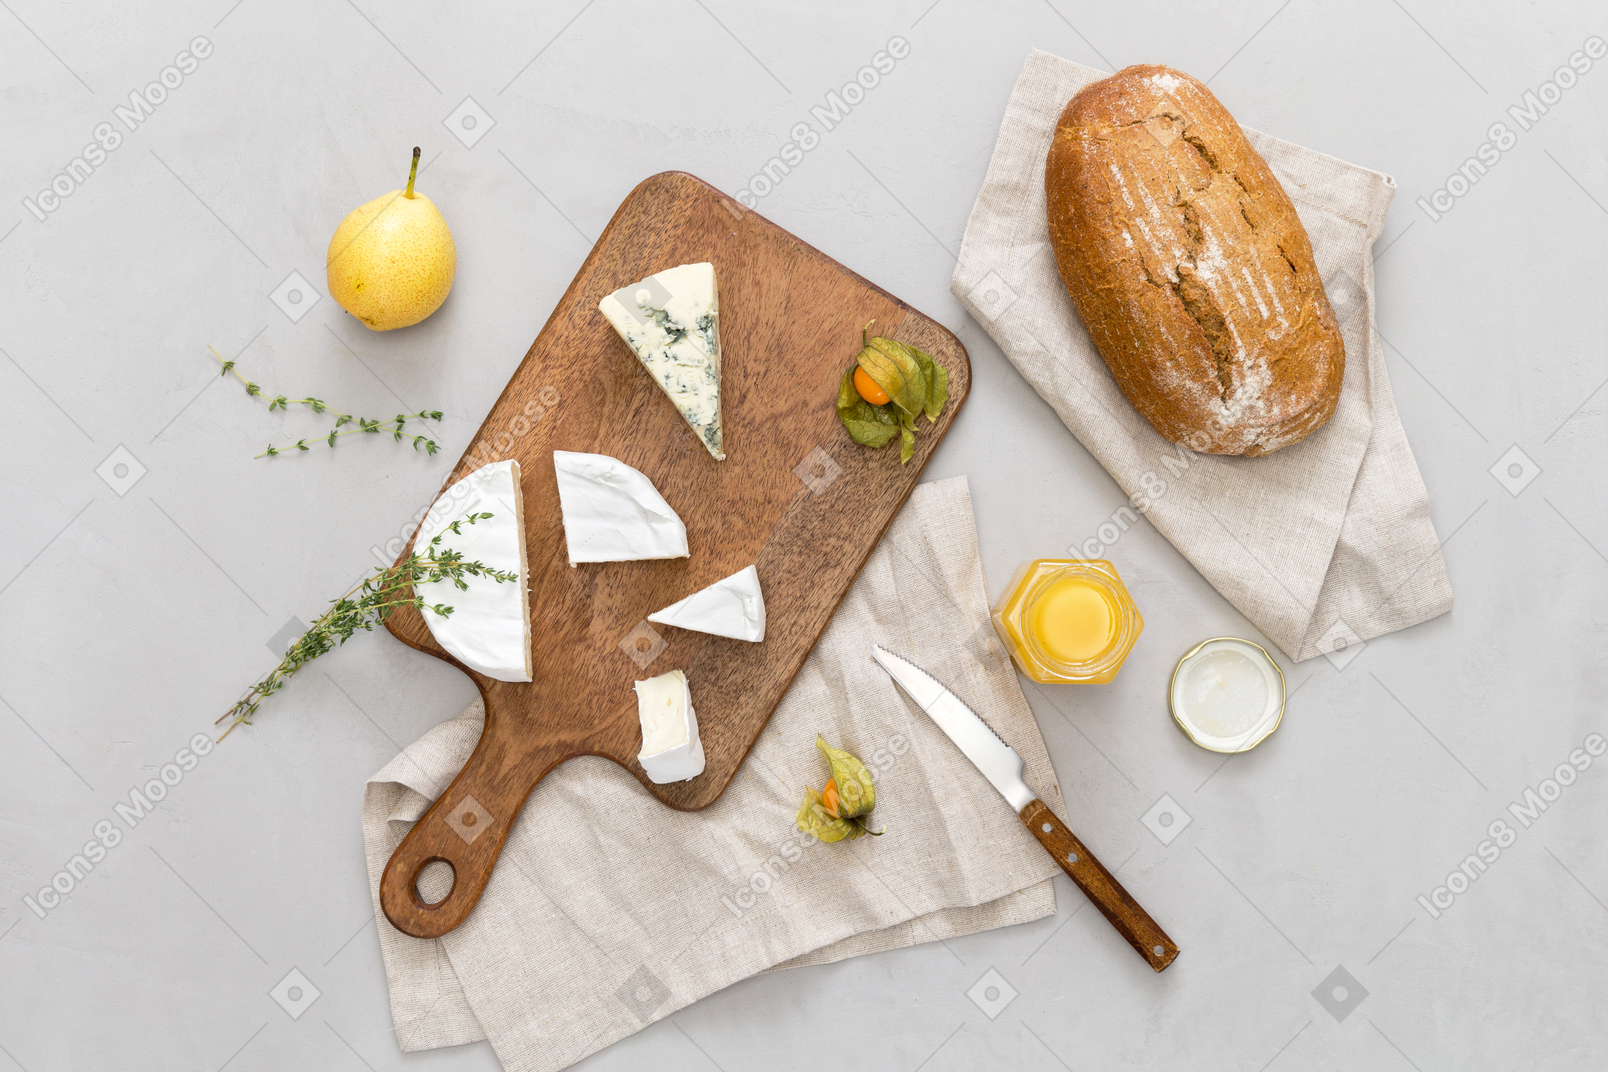 茶色のパン、チーズ、ハチミツとナシの瓶